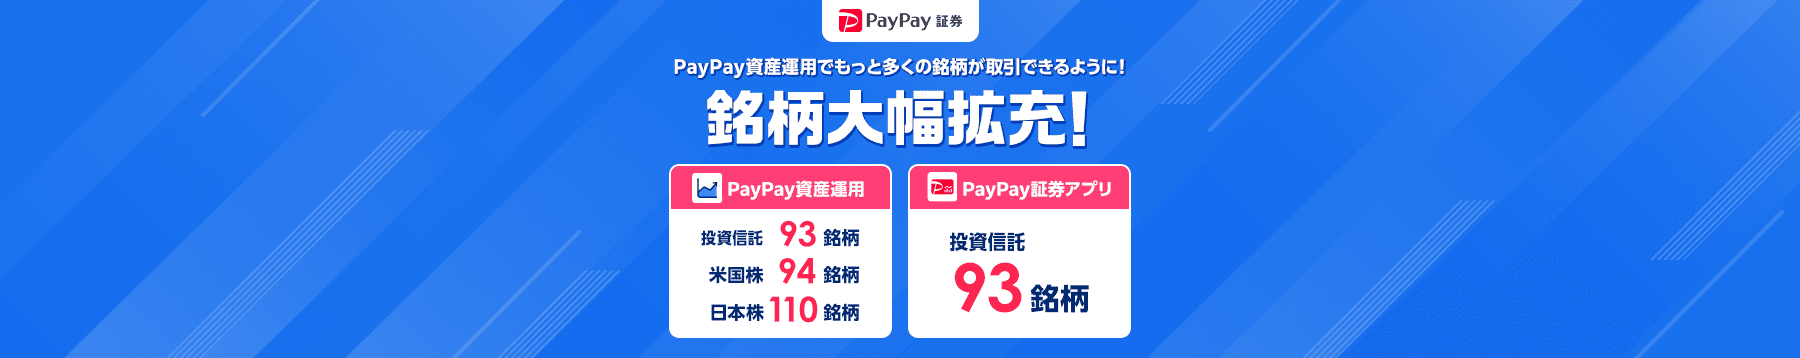 PayPay証券 PayPay資産運用でもっと多くの銘柄が取引できるように！ 銘柄大幅拡充！ PayPay資産運用は投資信託93銘柄、米国株94銘柄、日本株110銘柄 PayPay証券アプリは投資信託93銘柄